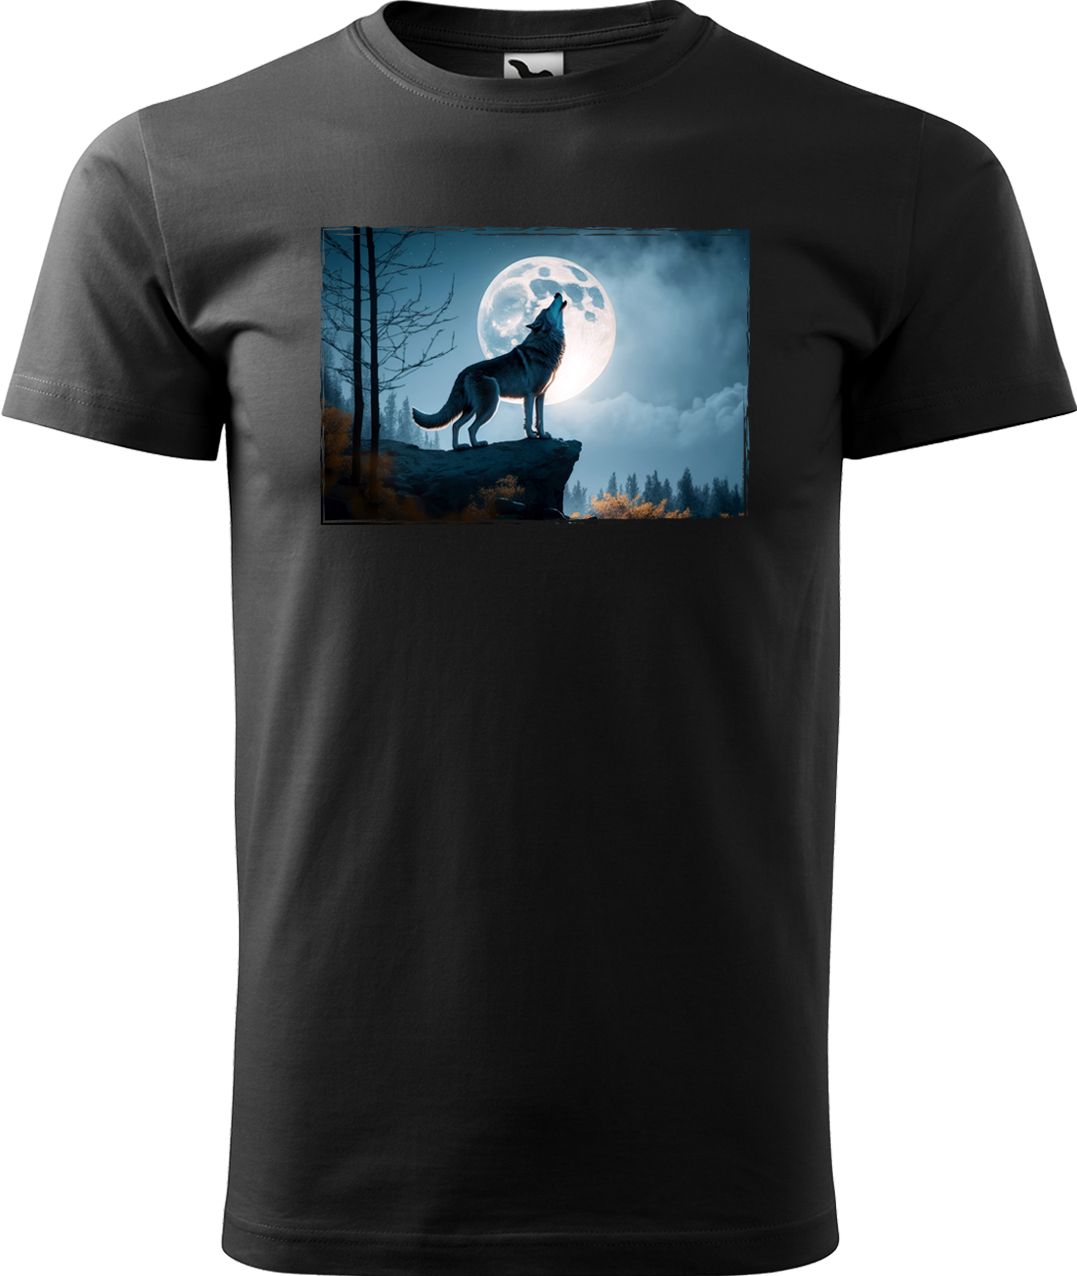 Pánské tričko s vlkem - Vyjící vlk Velikost: M, Barva: Černá (01)